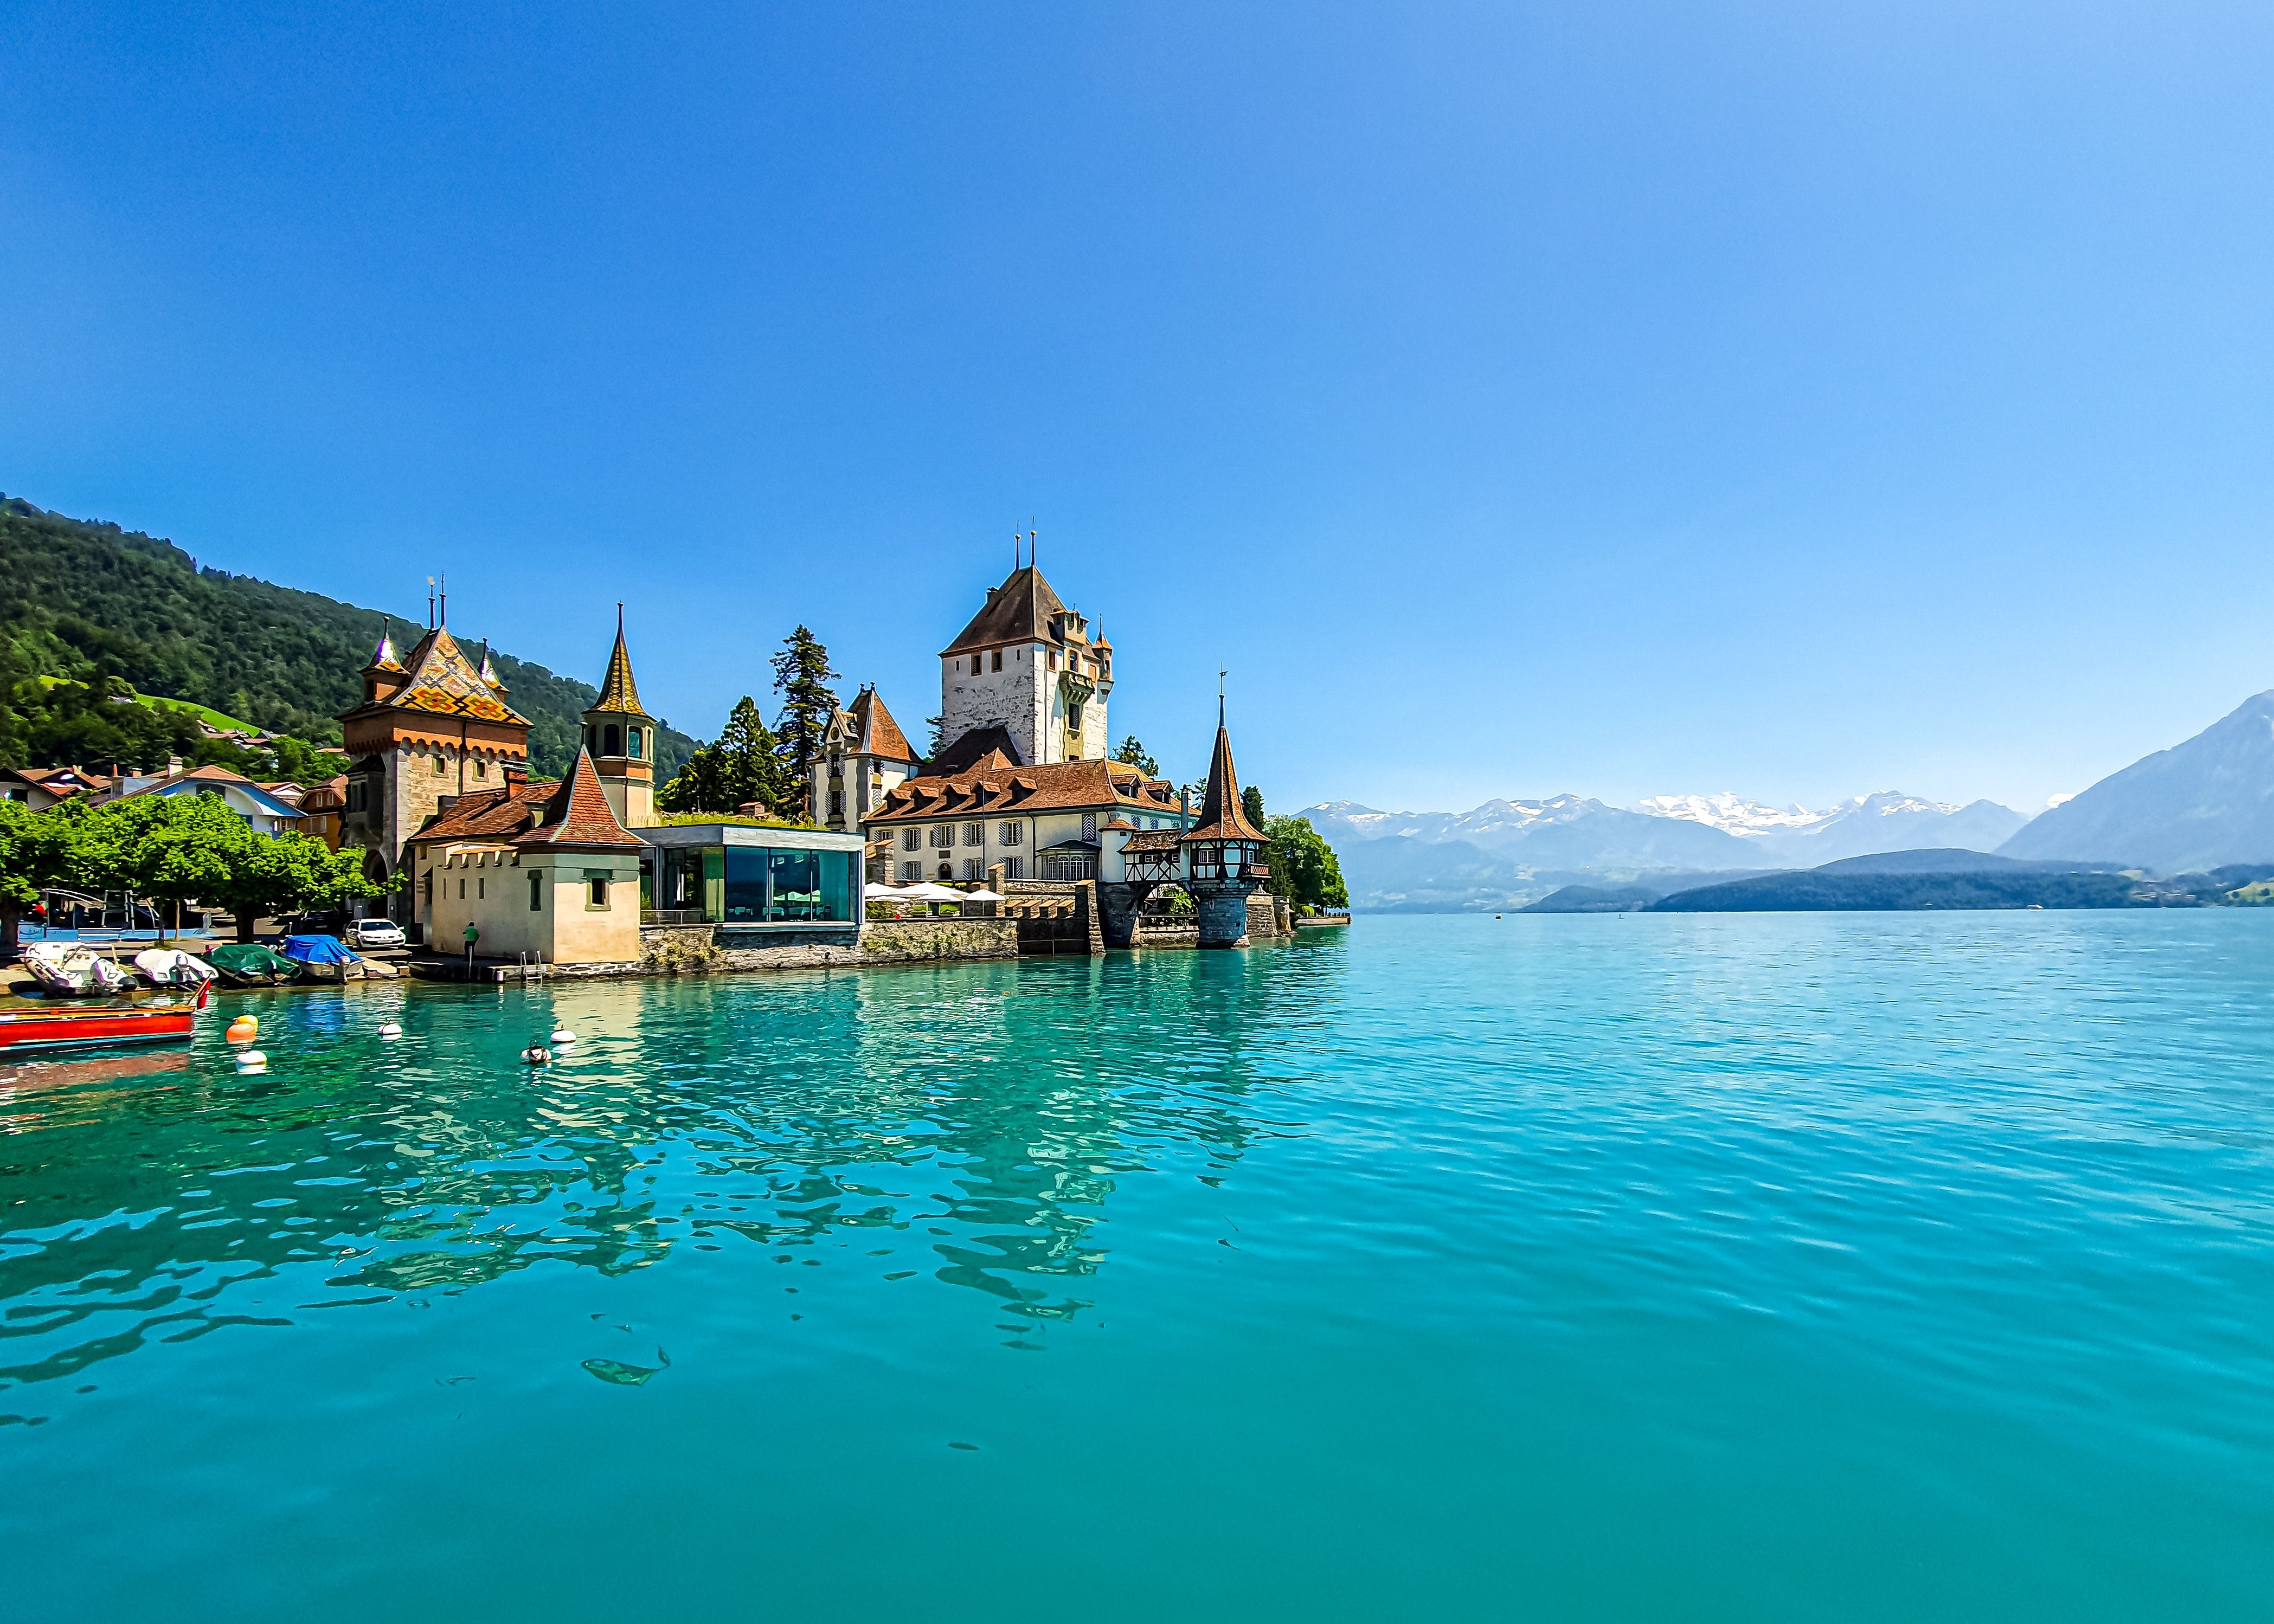  Schweiz Hintergrundbild 4194x2996. 1.Schweiz Bilder Und Fotos · Kostenlos Downloaden · Stock Fotos